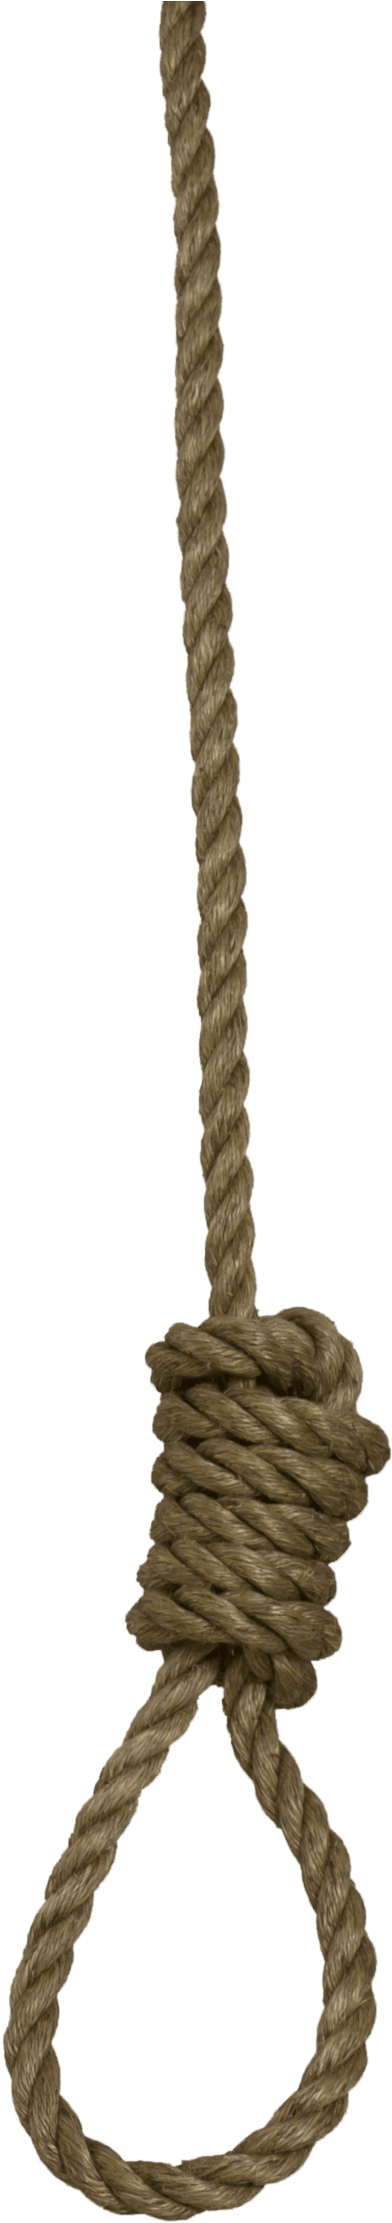 Hanging Noose Rope PNG